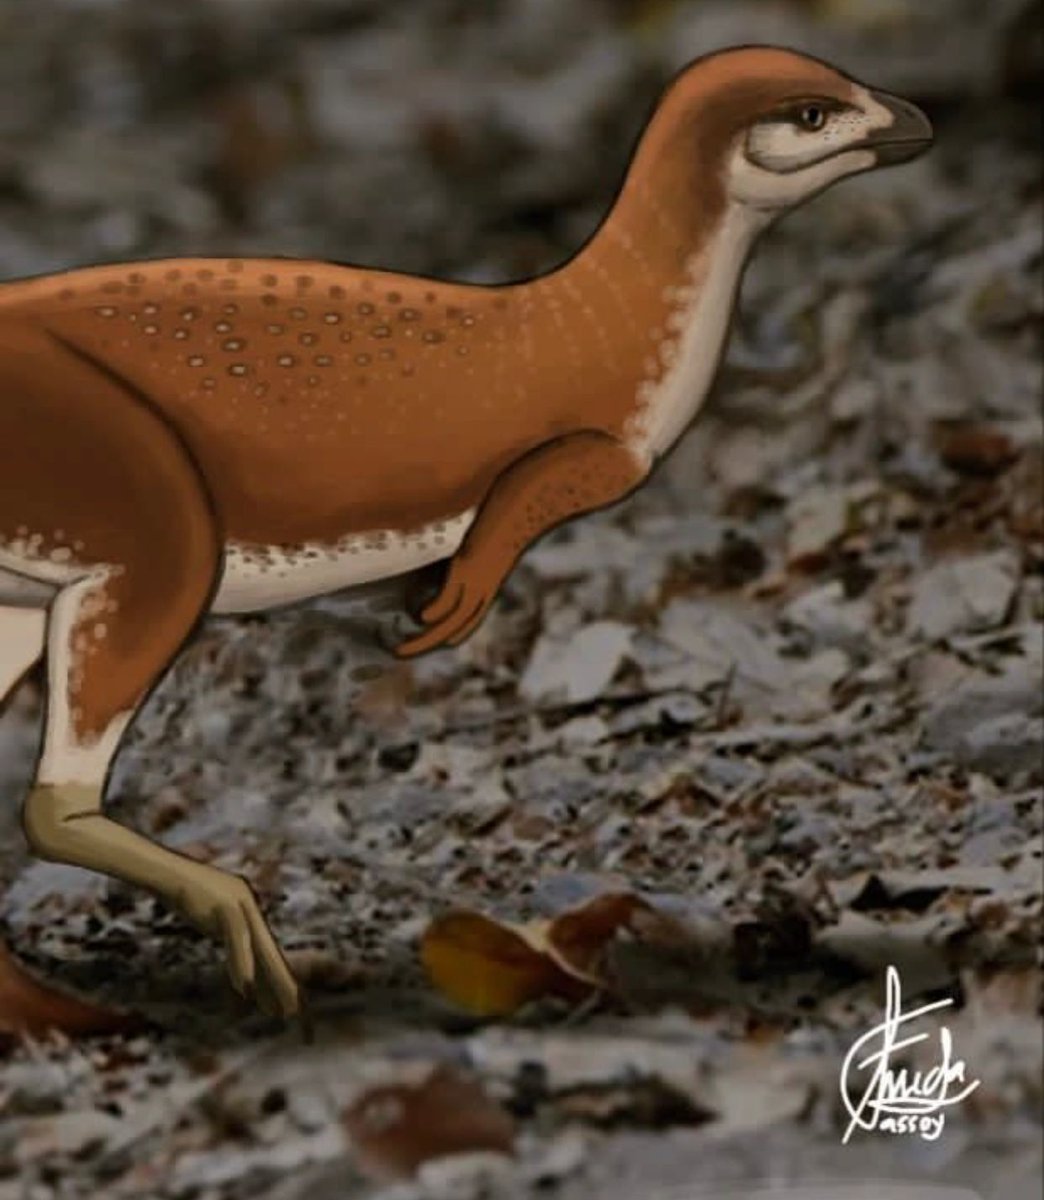 Sinosauropteryx
#sinosauropteryx #paleoart #dinovember #paleoillustration